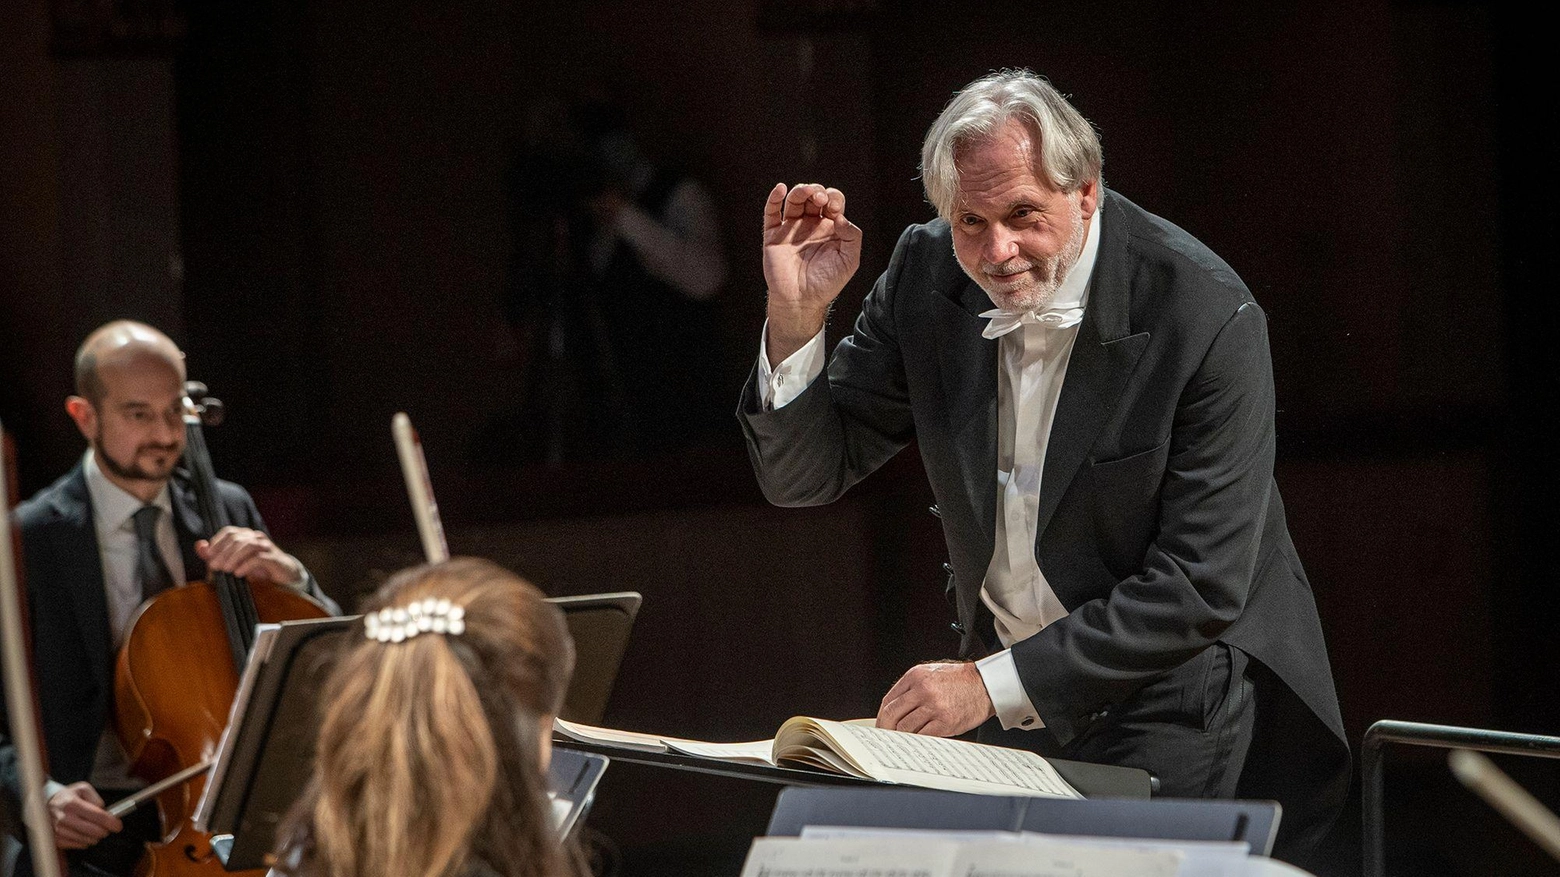 L’Orchestra della Toscana inaugura la stagione nel segno di Mahler